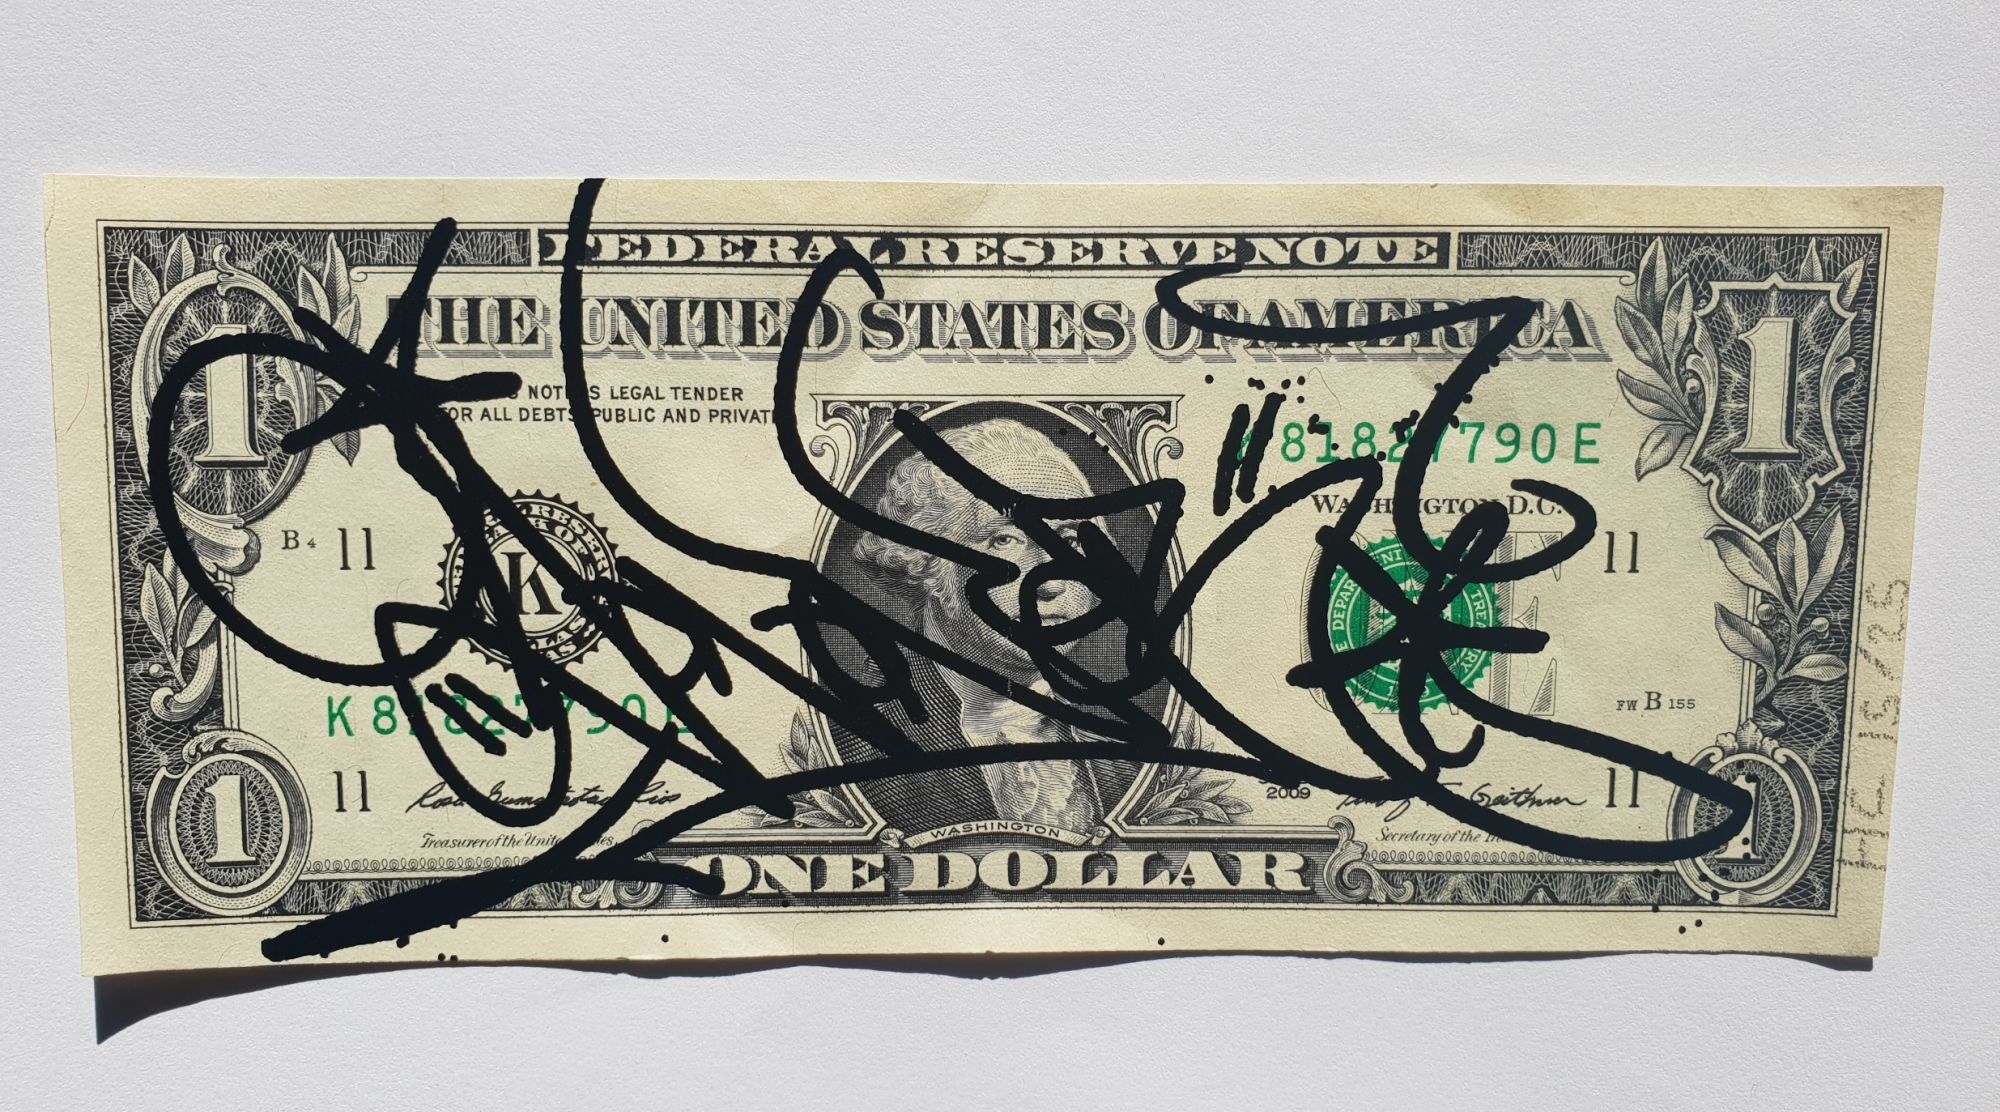 JonOne Billet de 1$